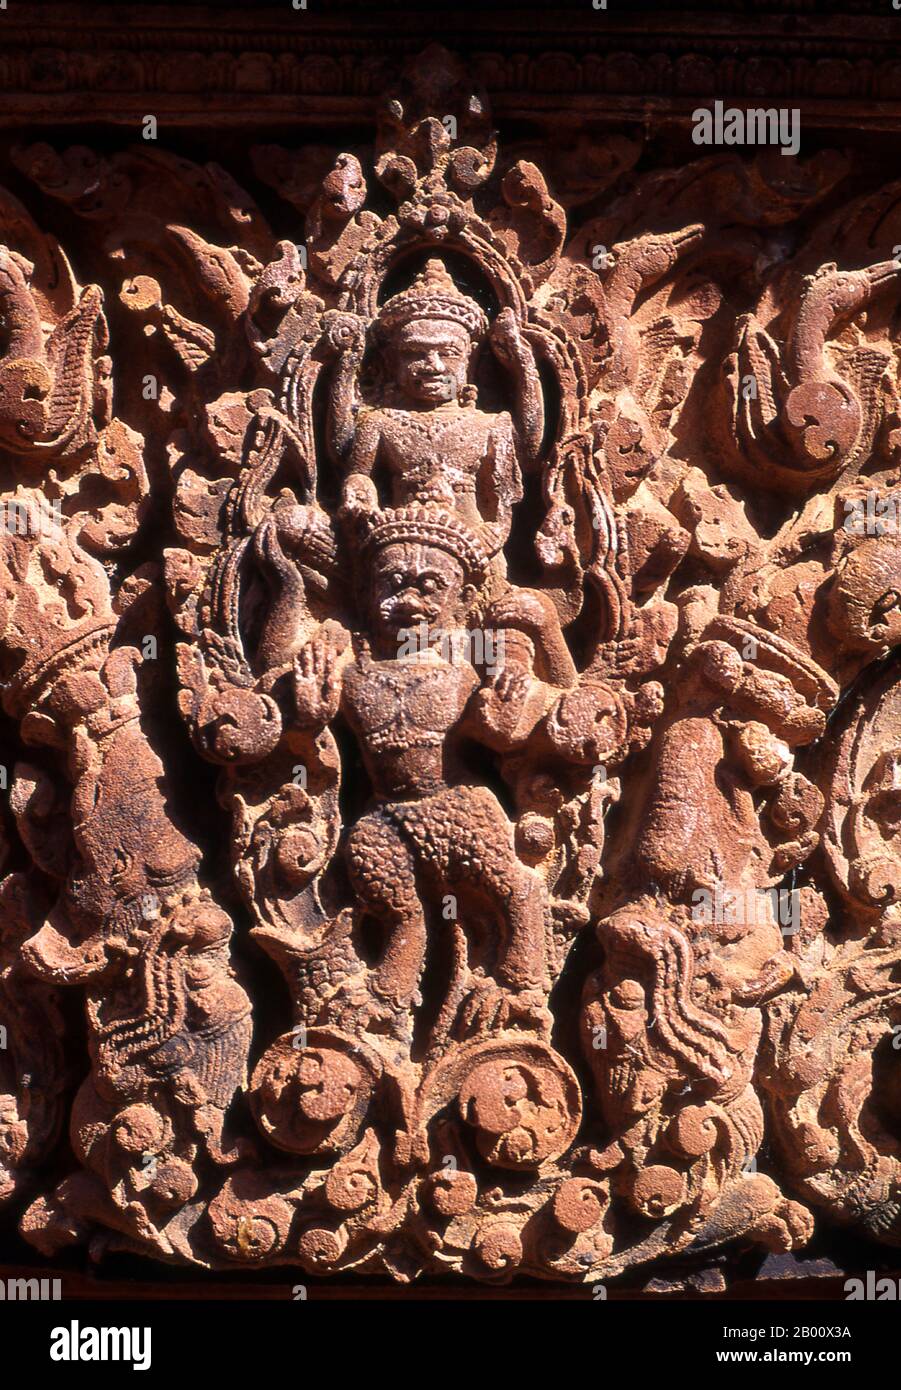 Kambodscha: Pediment Detail, Banteay Srei (Zitadelle der Frauen), bei Angkor. Banteay Srei (oder Banteay Srey) ist ein kambodschanischer Tempel aus dem 10. Jahrhundert, der dem Hindu-gott Shiva gewidmet ist und im Nordosten der Hauptgruppe von Tempeln in Angkor liegt. Banteay Srei ist weitgehend aus rotem Sandstein gebaut, ein Medium, das sich für die aufwendigen dekorativen Wandschnitzereien eignet, die noch heute zu beobachten sind. Banteay Srei wird manchmal als das "Juwel der Khmer-Kunst" bezeichnet. Stockfoto